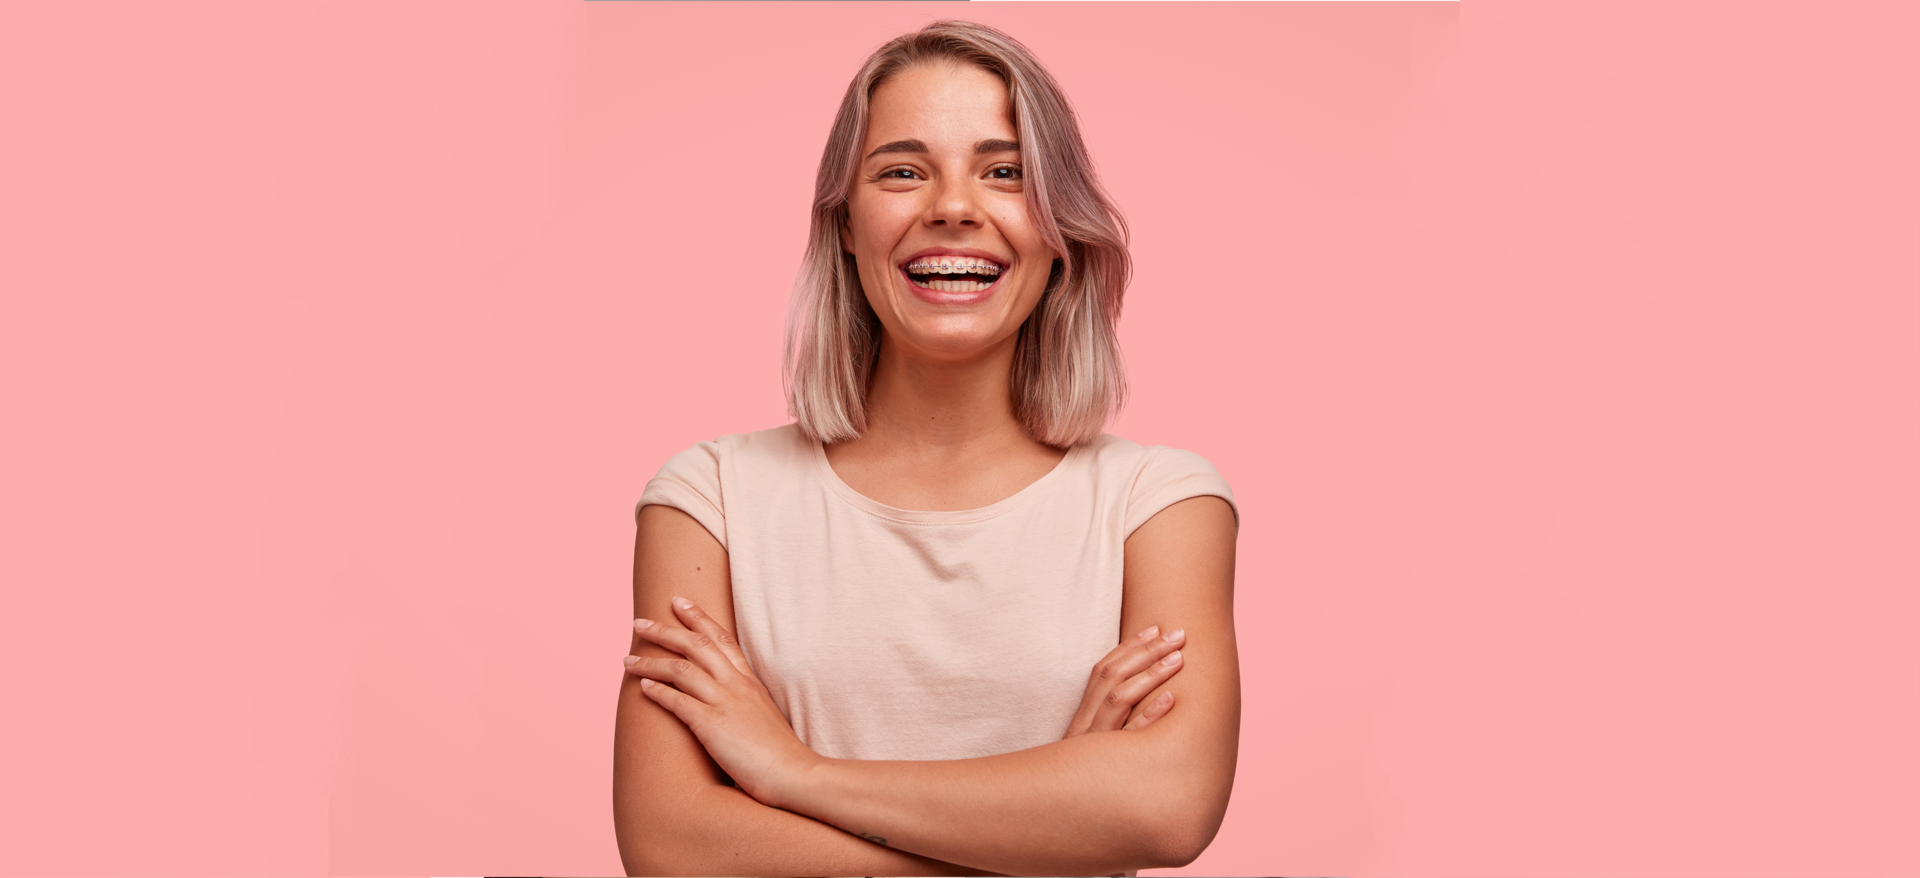 Mujer sonriendo con ortodoncia